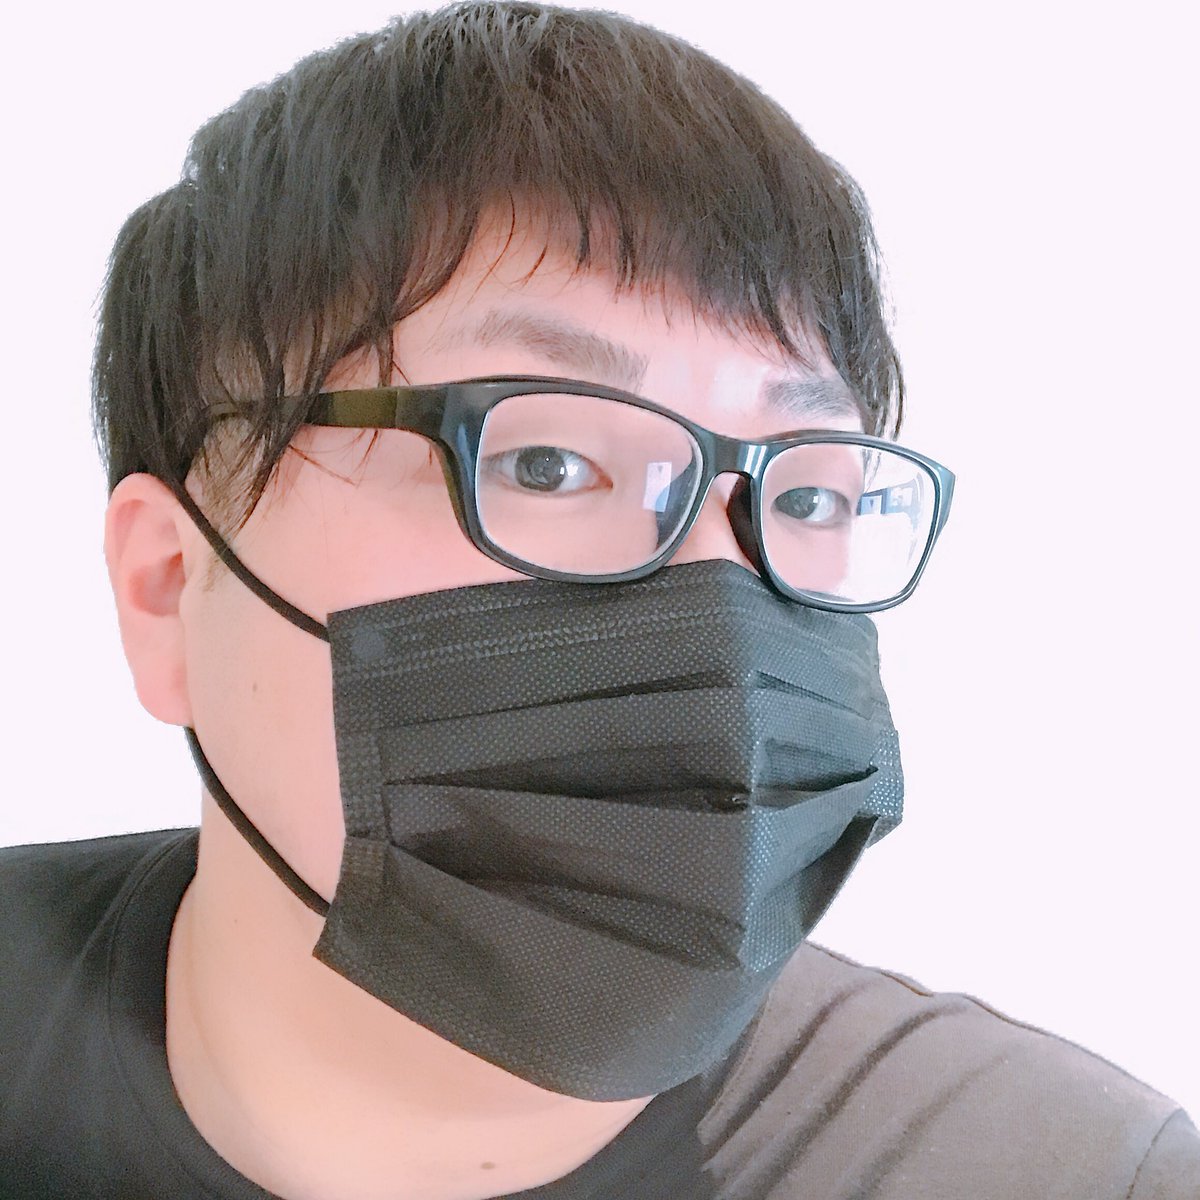 デカキン בטוויטר 沖縄に来た海外の観光客の人がみんなつけてたオシャレなマスク買いました サイズもピッタリで最高です